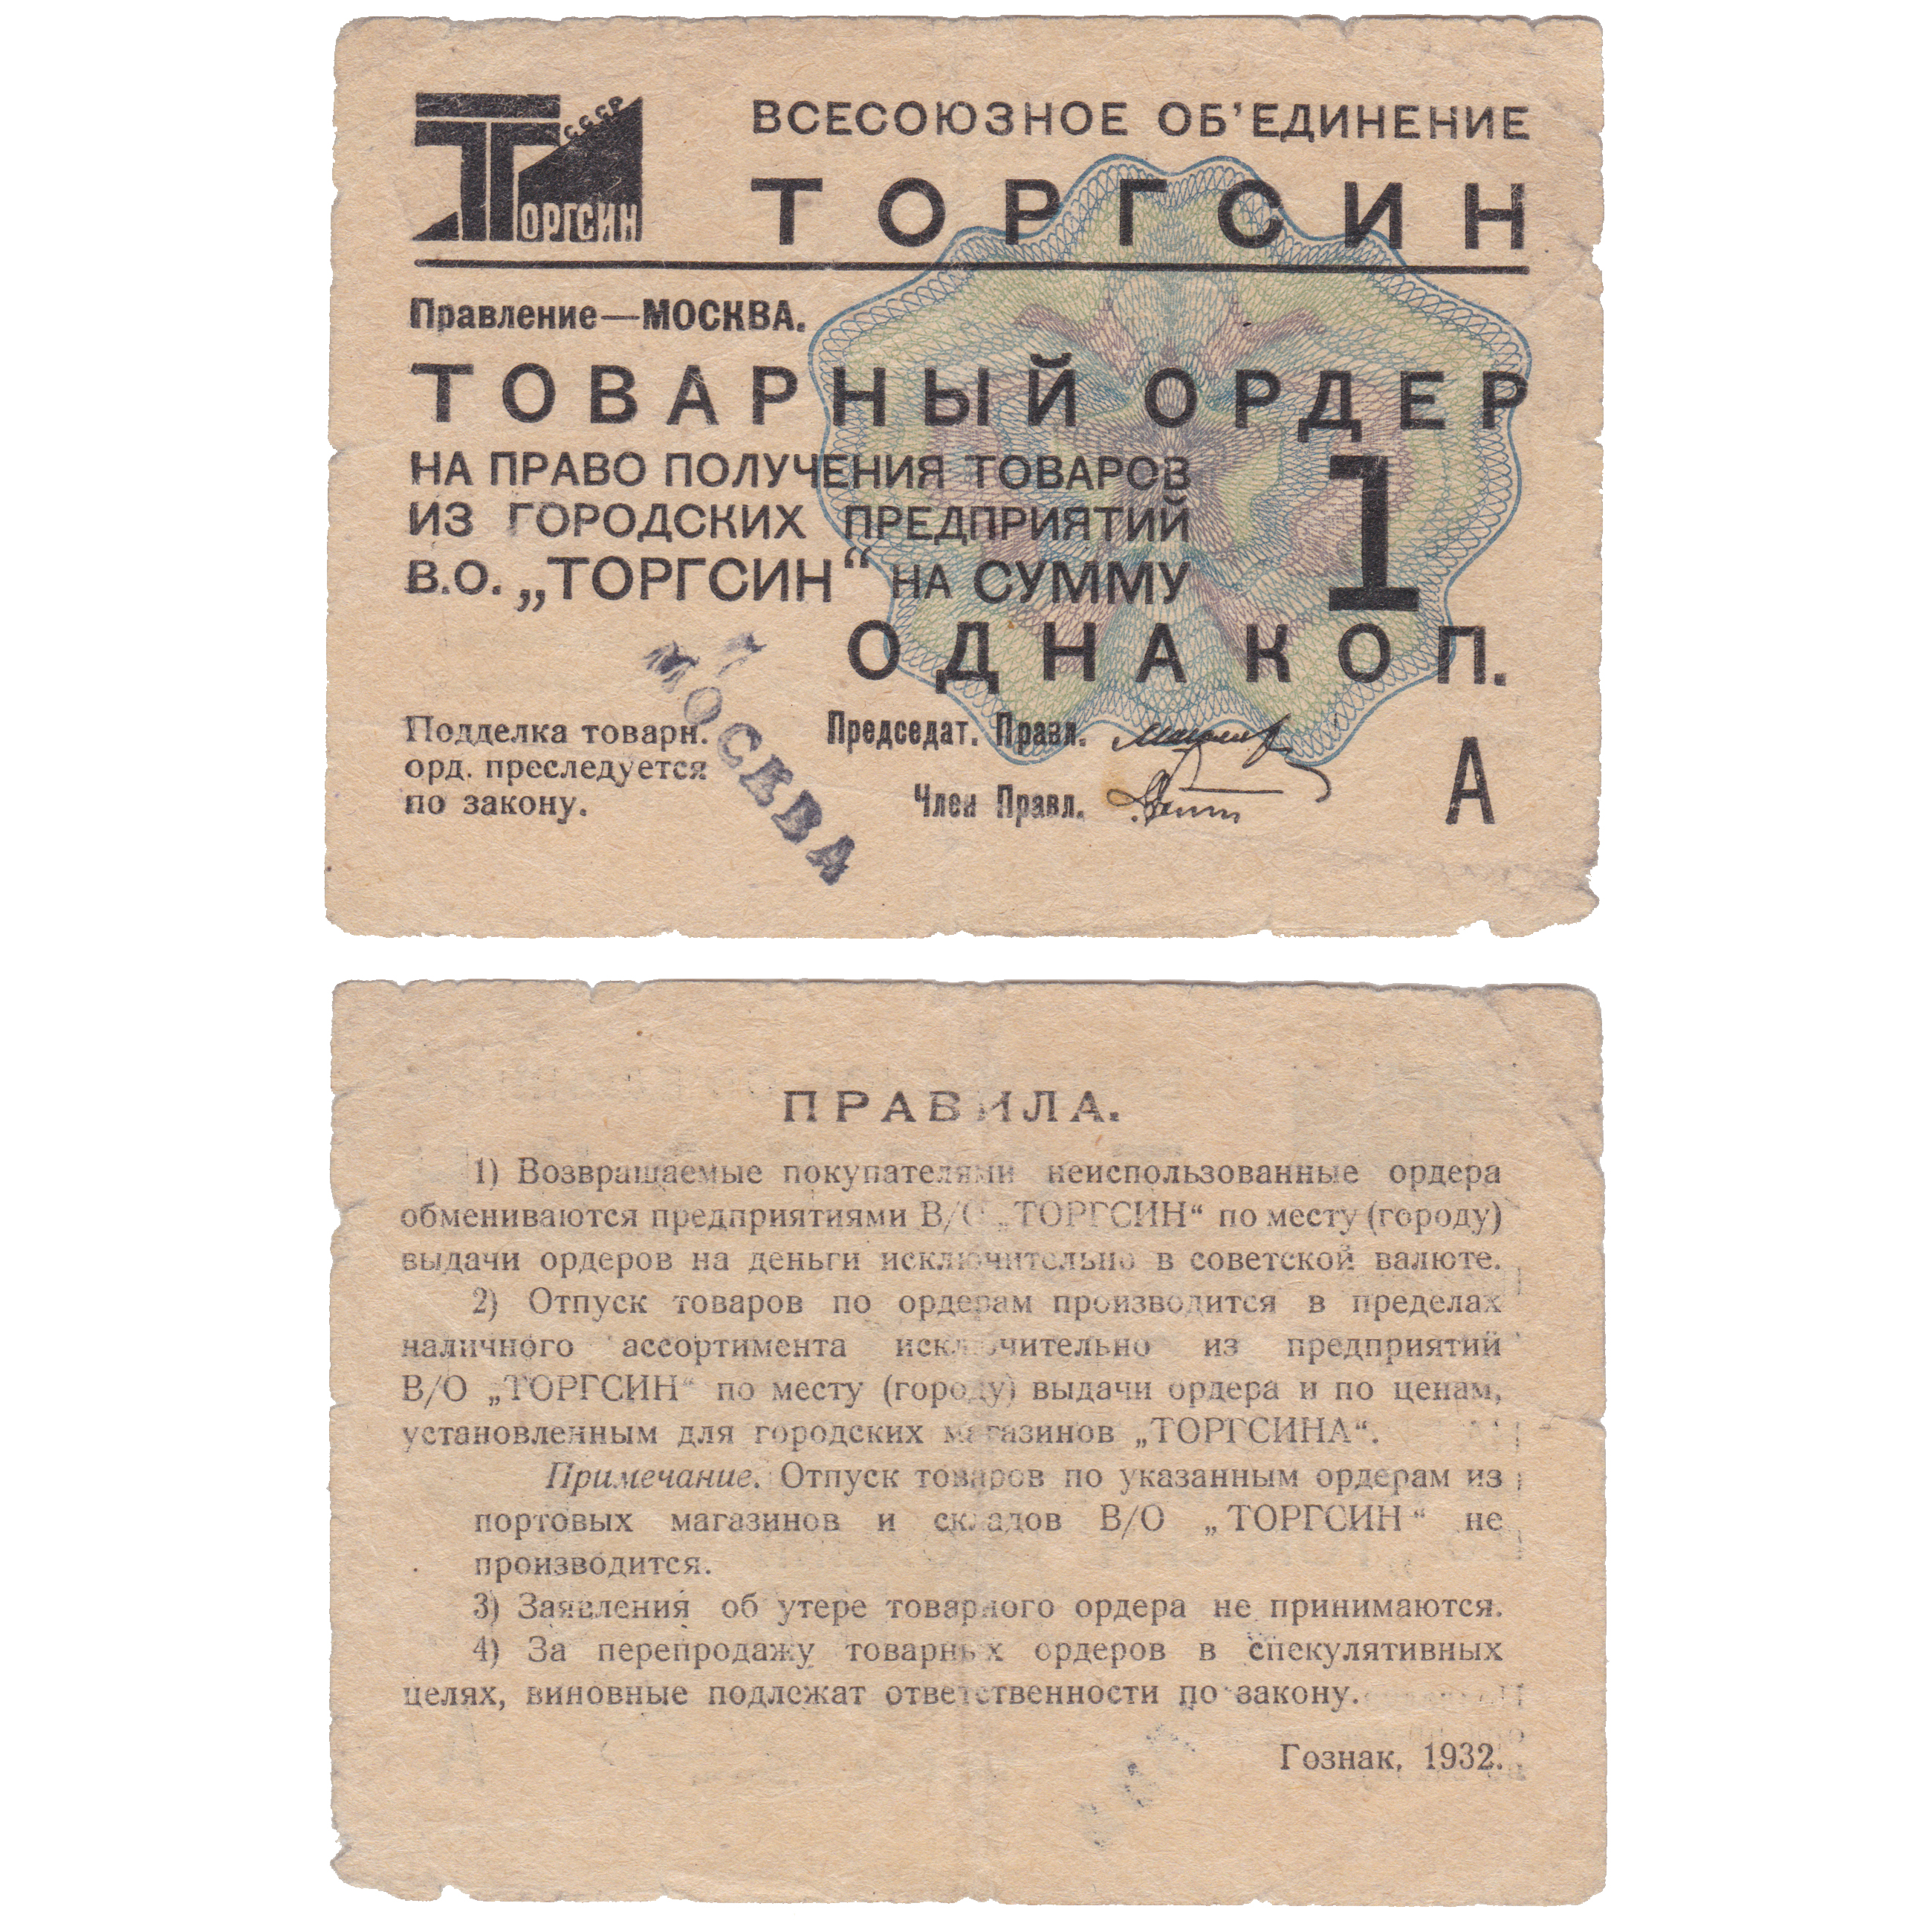 Товарный ордер на право получения товаров из городских предприятий В.О. «Торгсин» на сумму 1 Копейка 1932 год. Всесоюзное Объединение «Торгсин»